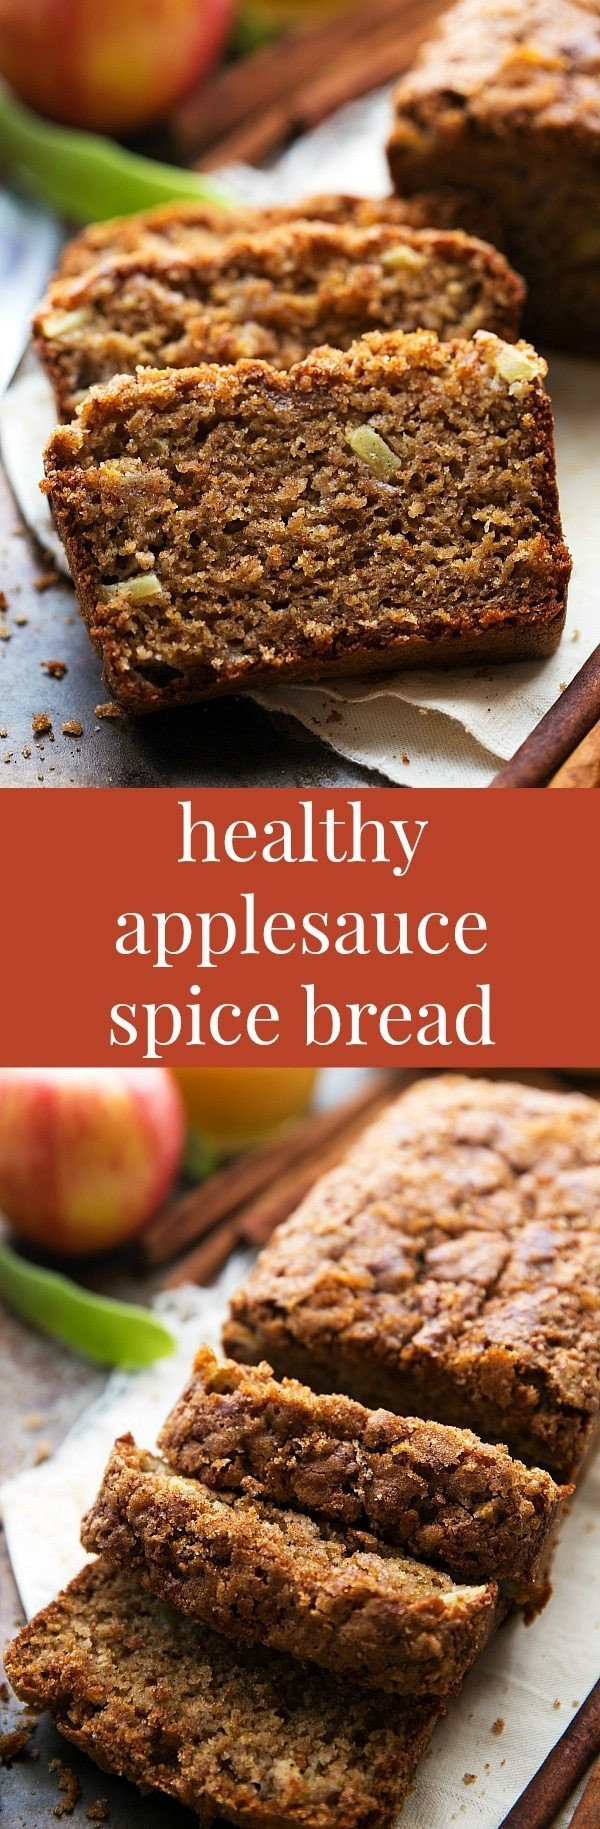 Healthy Applesauce Recipe
 healthy applesauce bread recipe